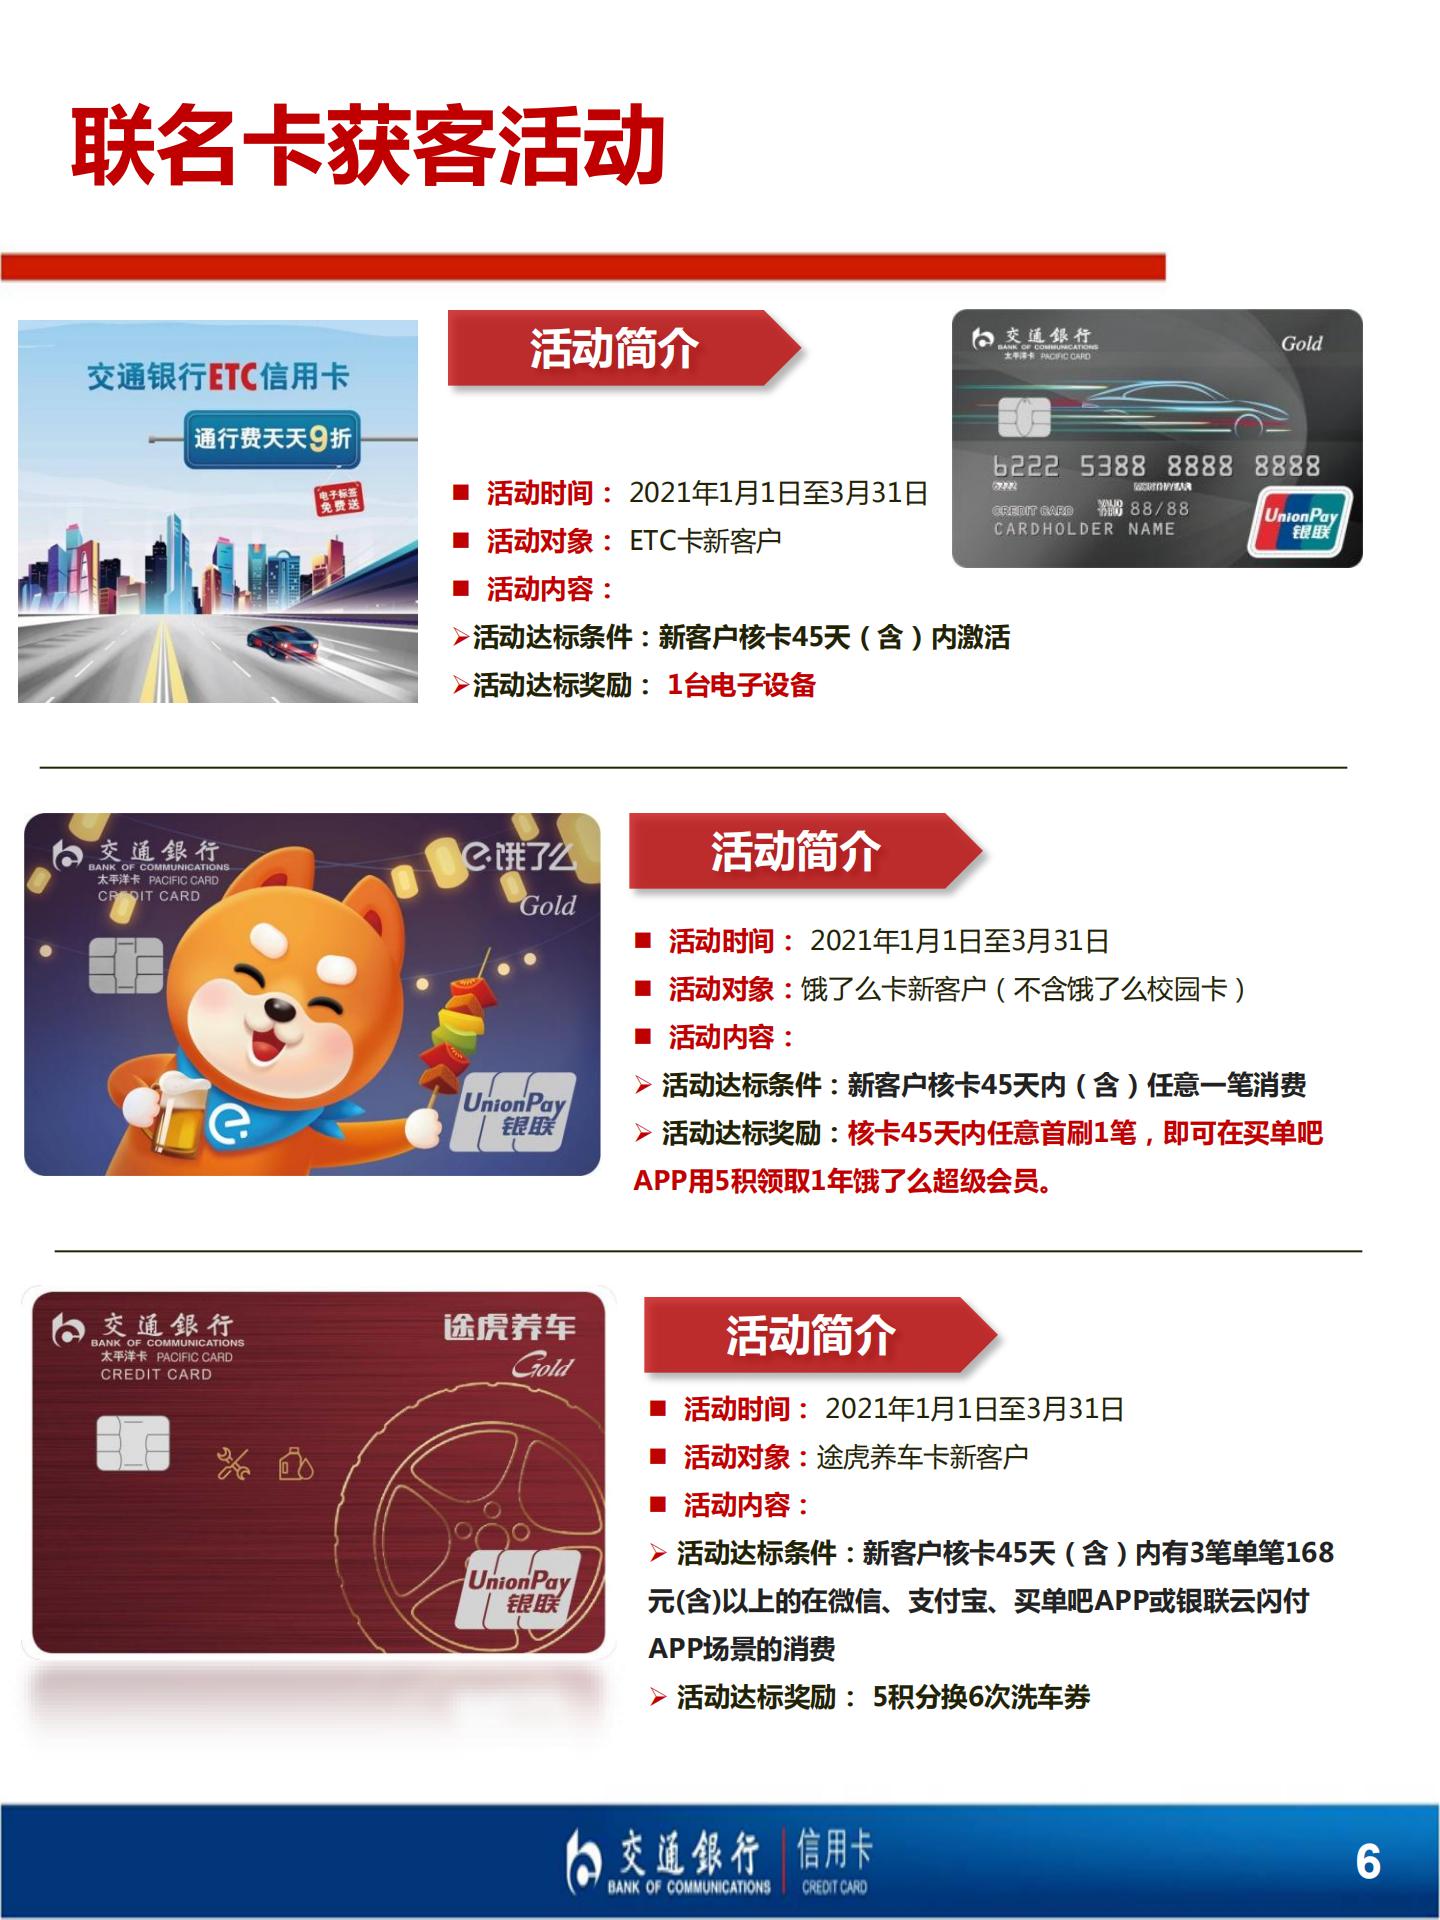 信用卡营销活动手册（2020年12月）_07.jpg